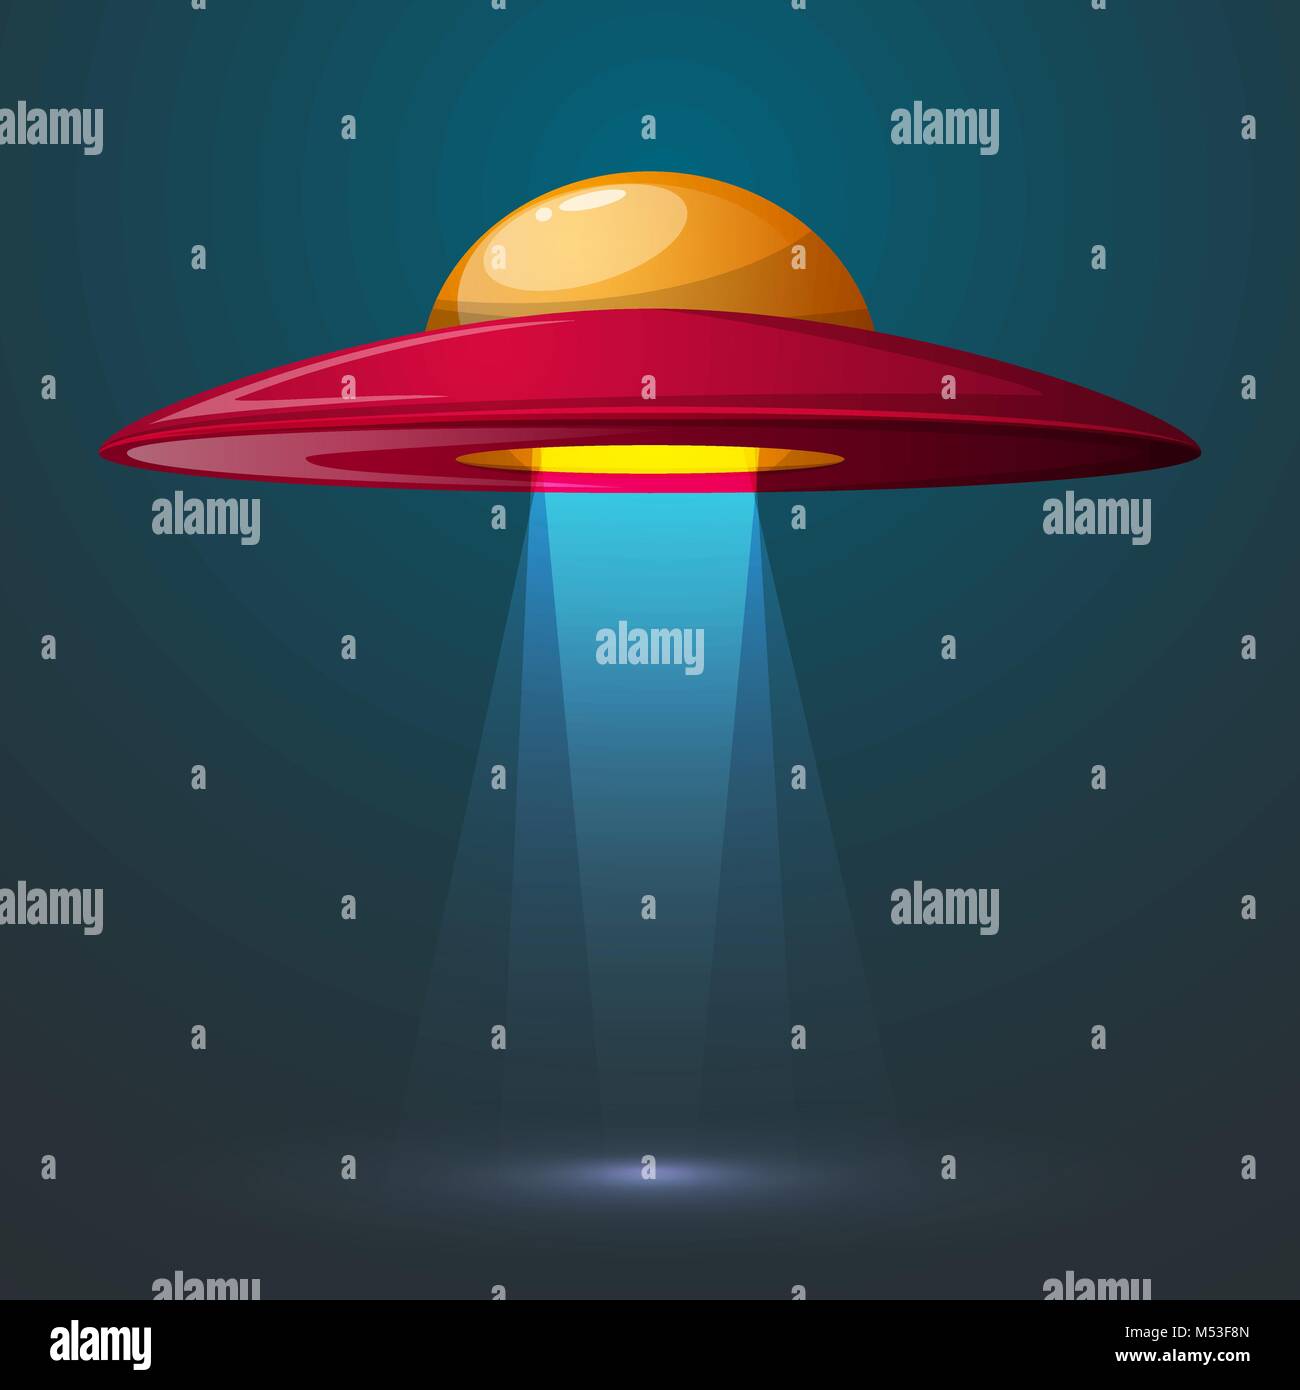 Cartoon ufo illustration. Bulb, light. Stock Vector